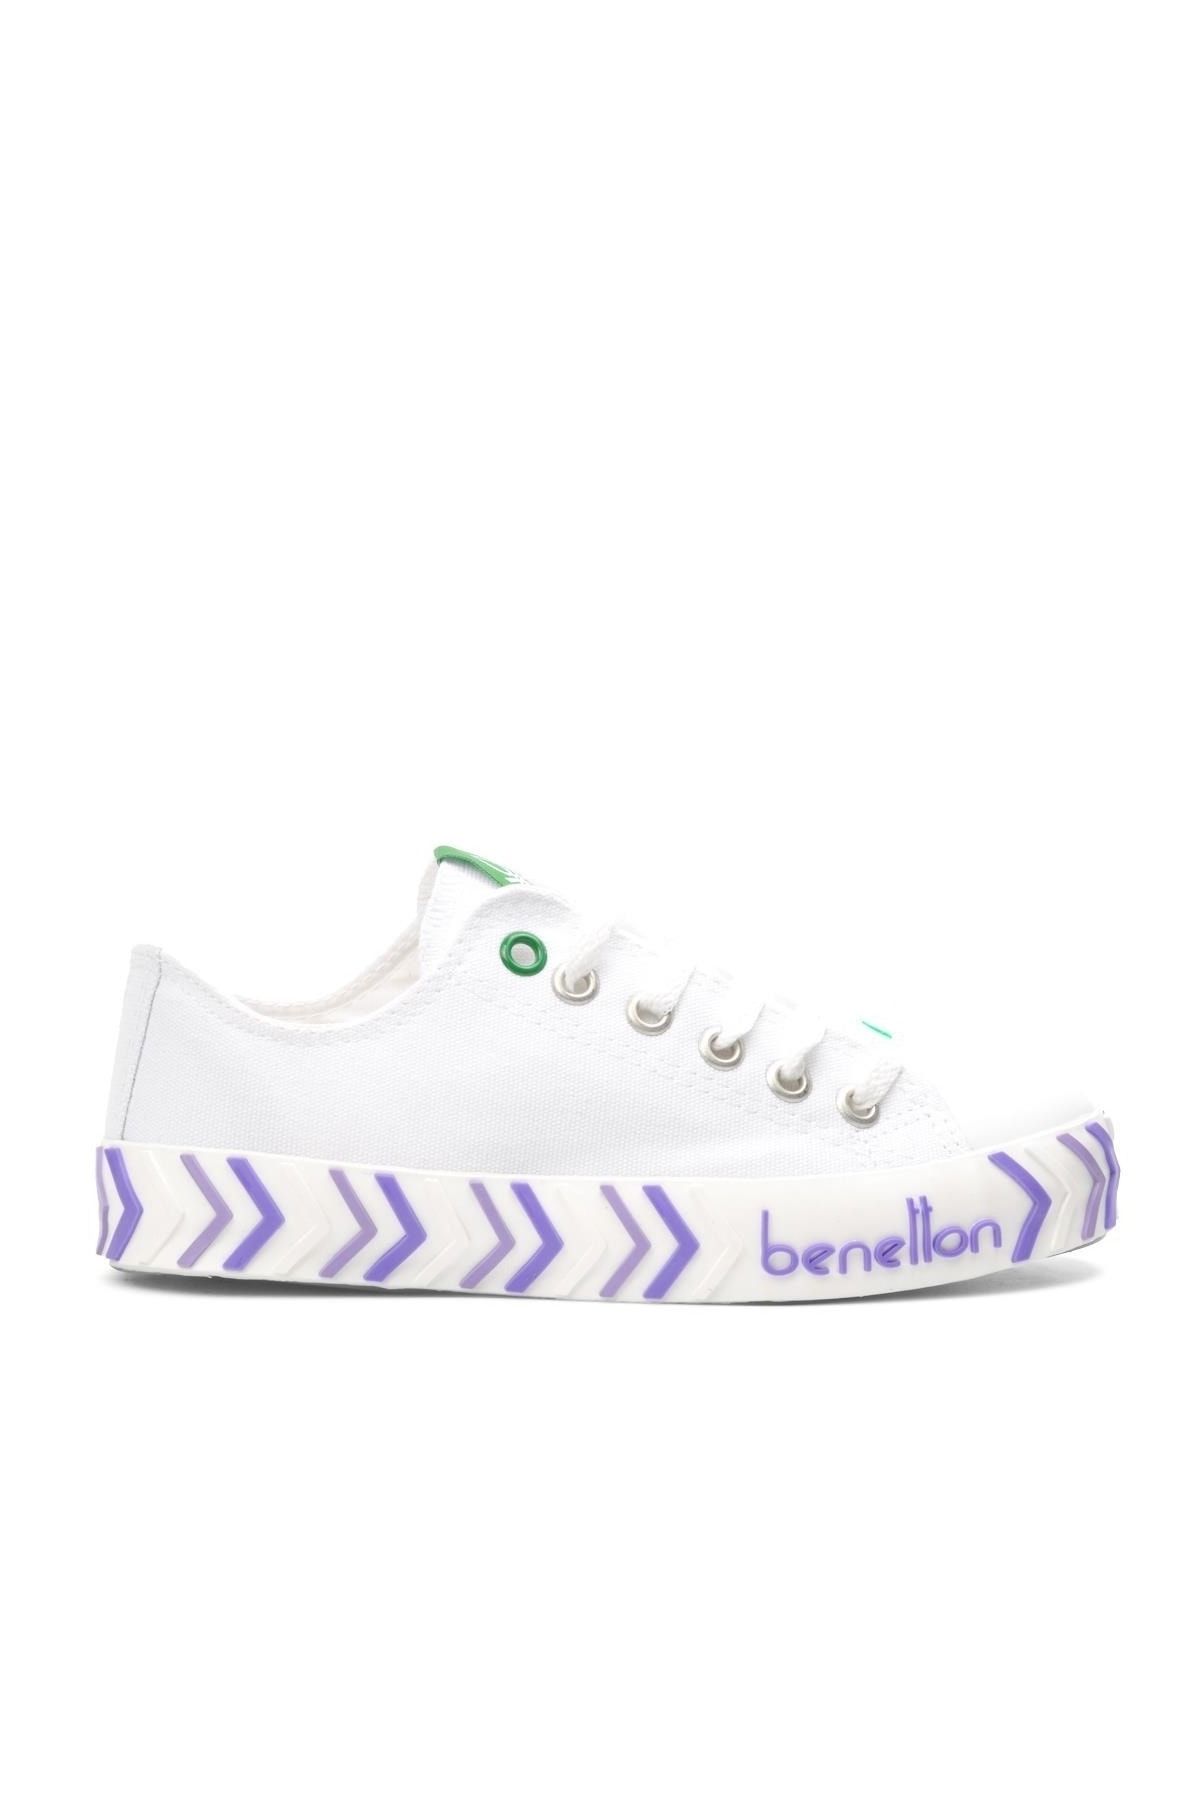 Benetton Mor - Kadın Spor Ayakkabı